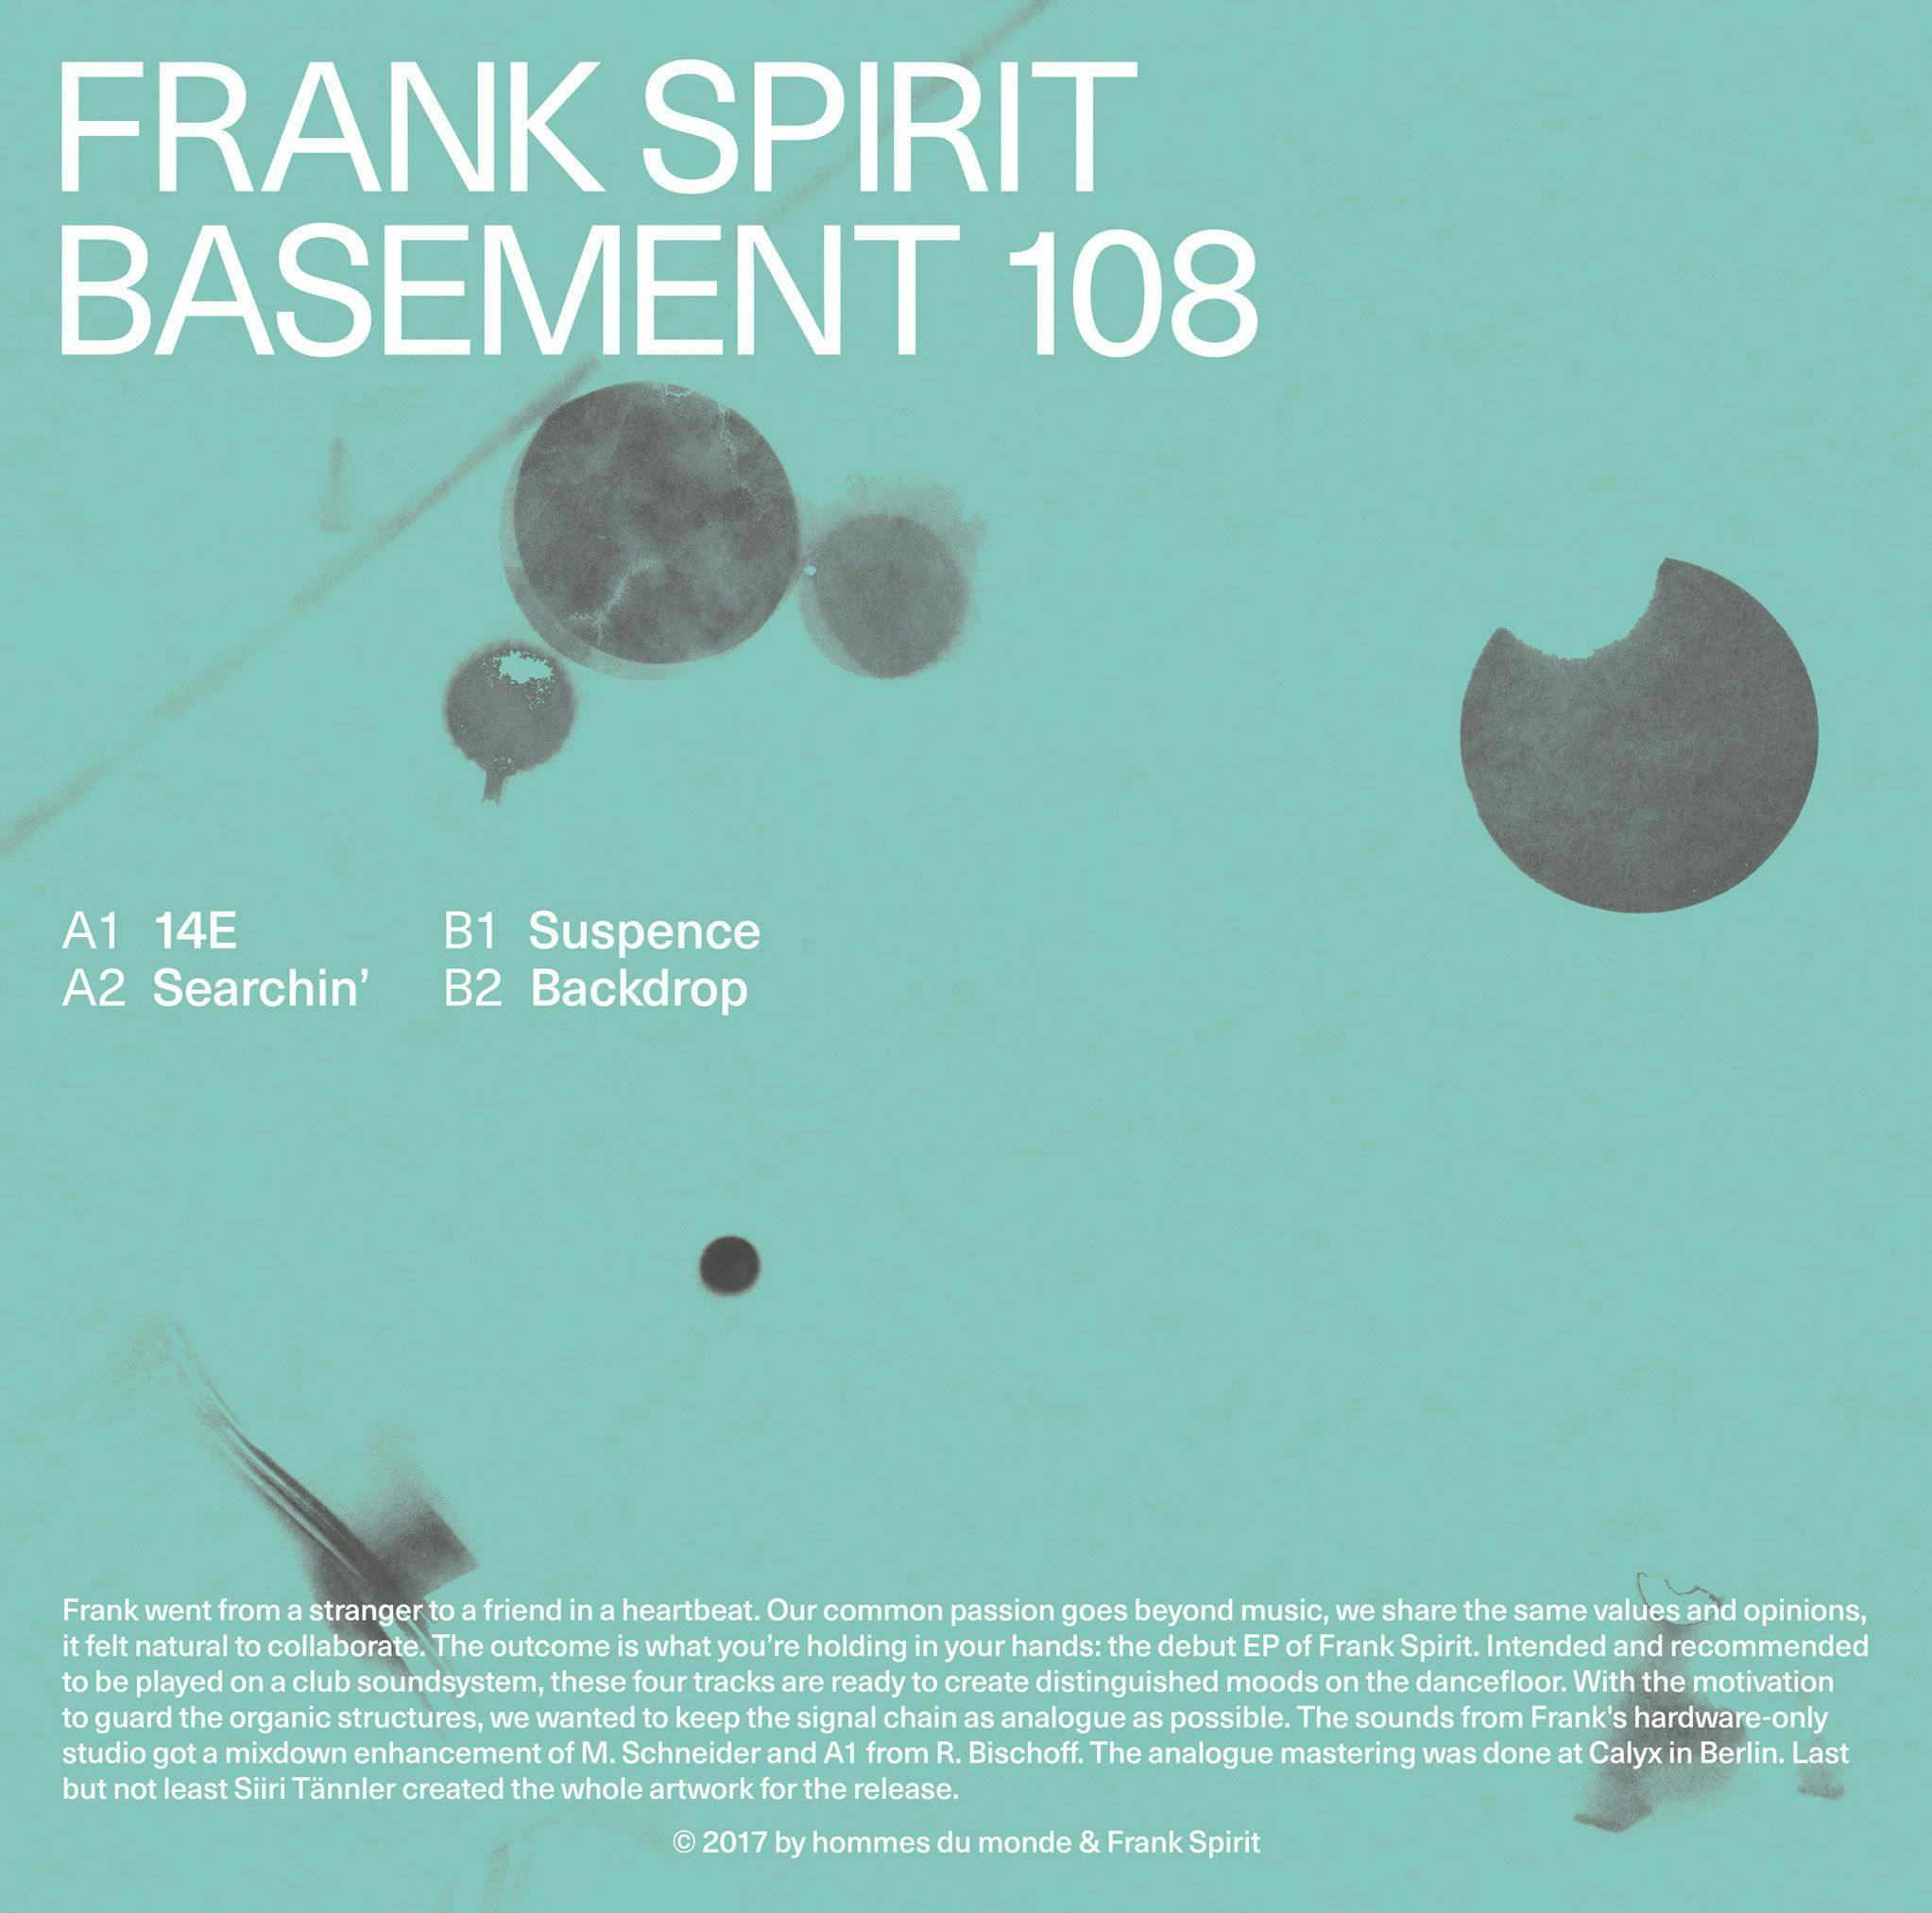 Frank Spirit: Basement 108 album artwork back cover